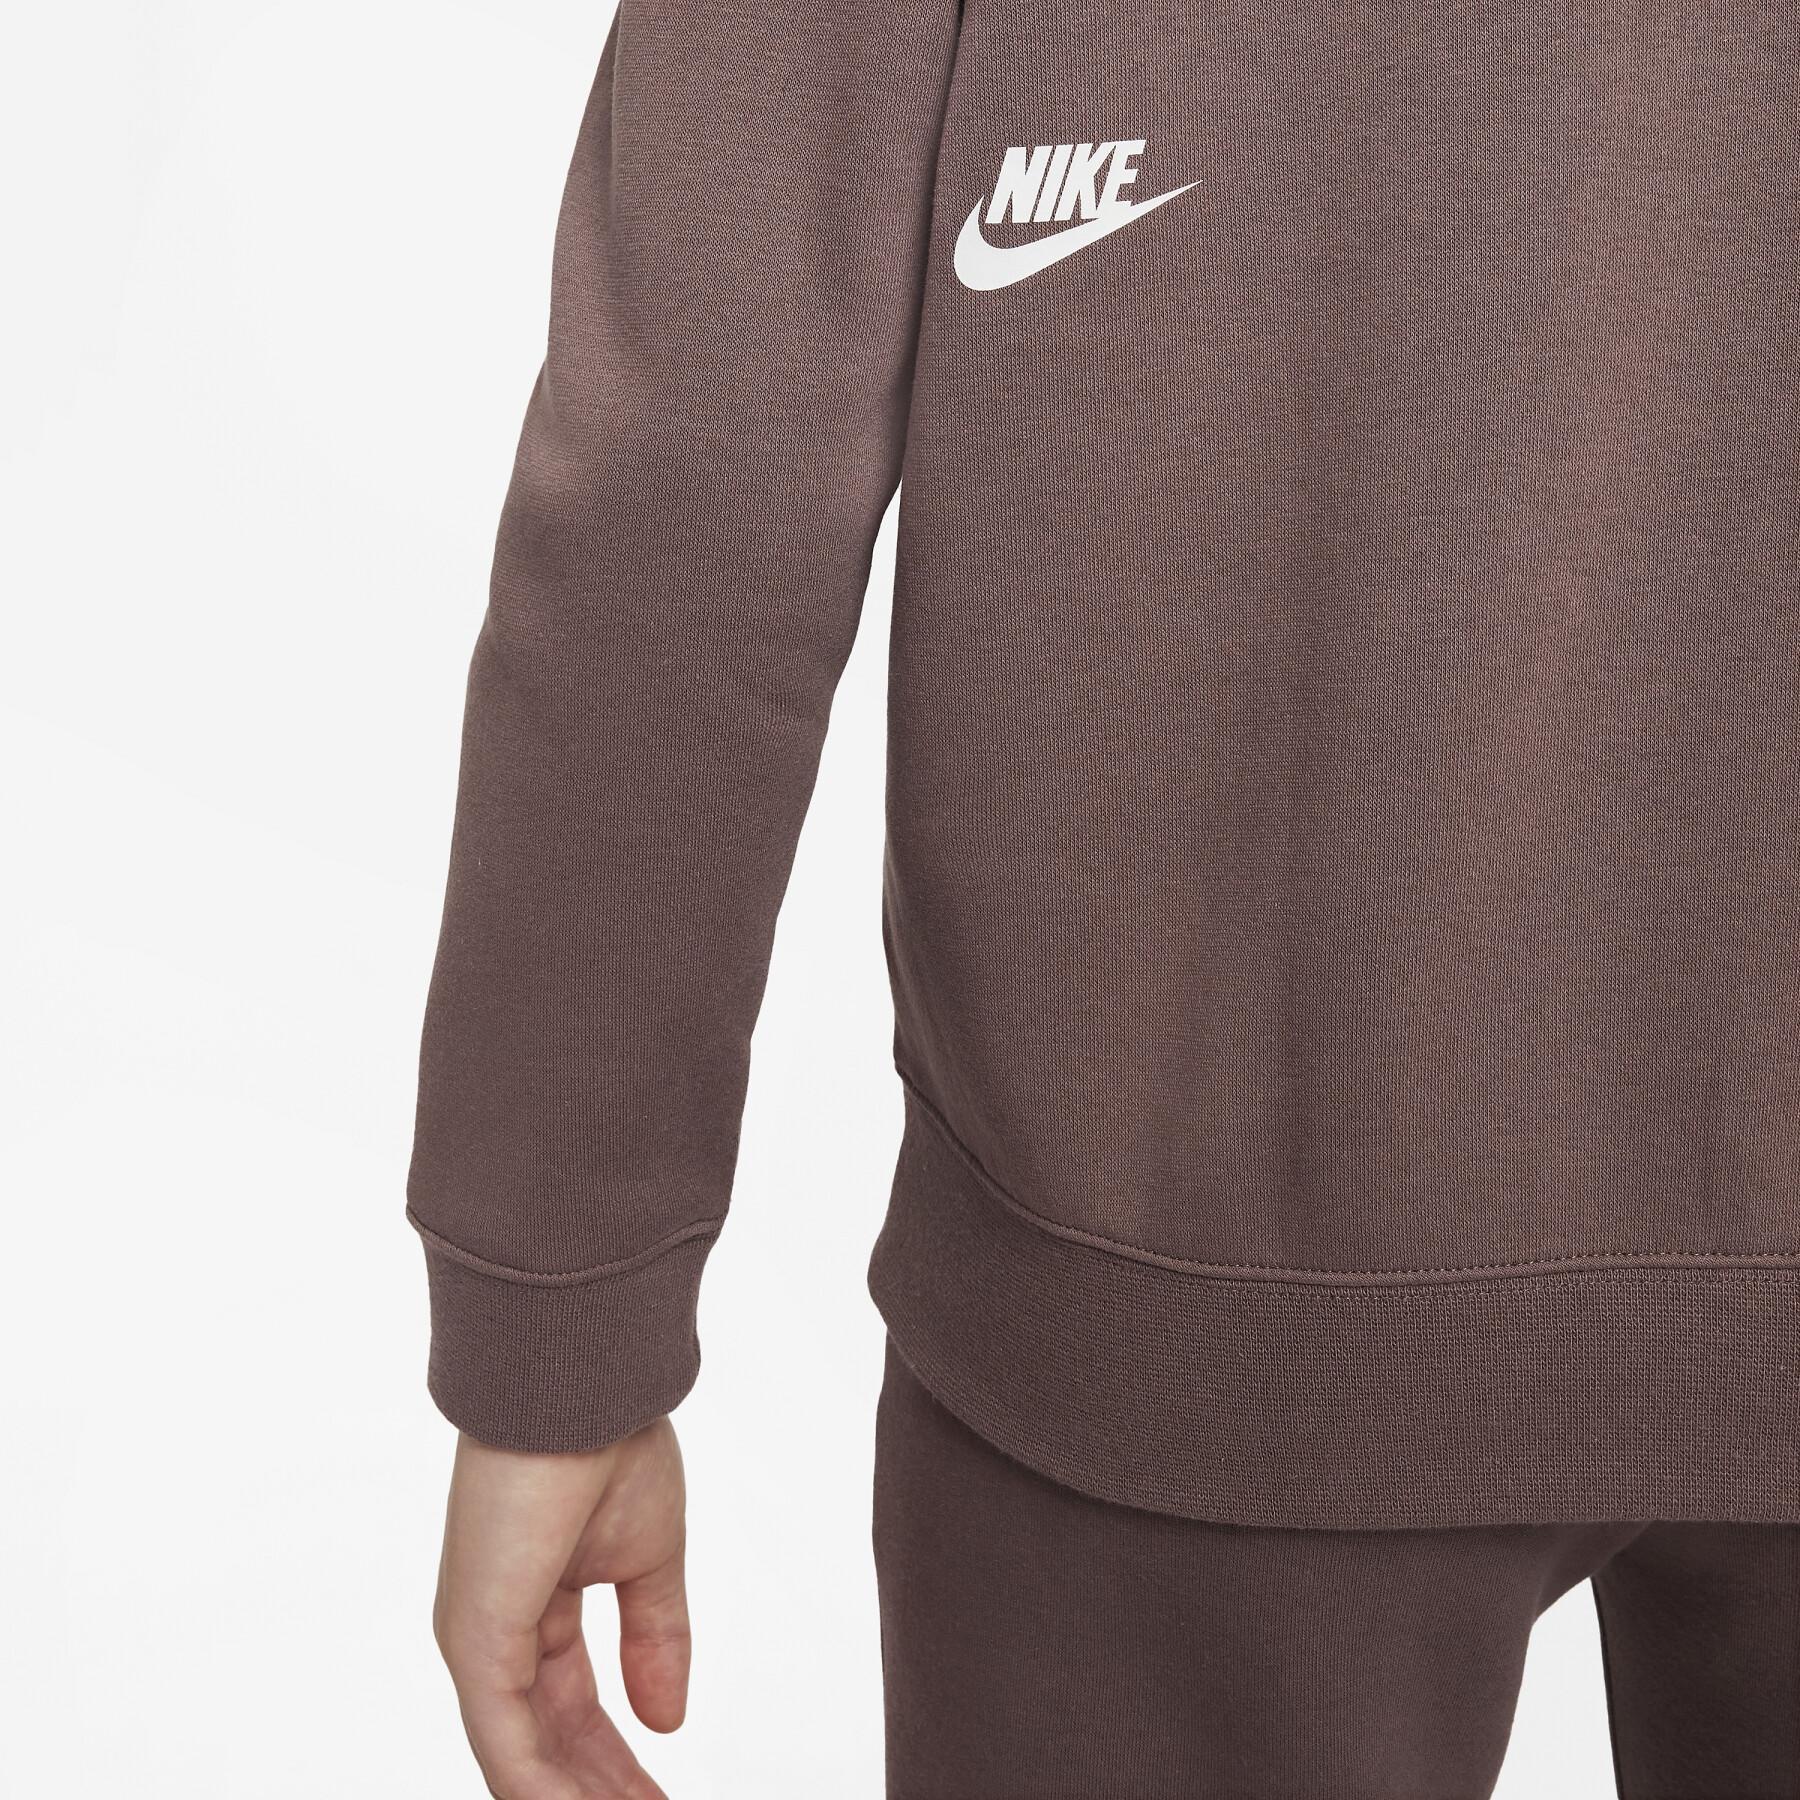 Sweatshirt sudadera con capucha de gran tamaño para niñas Nike